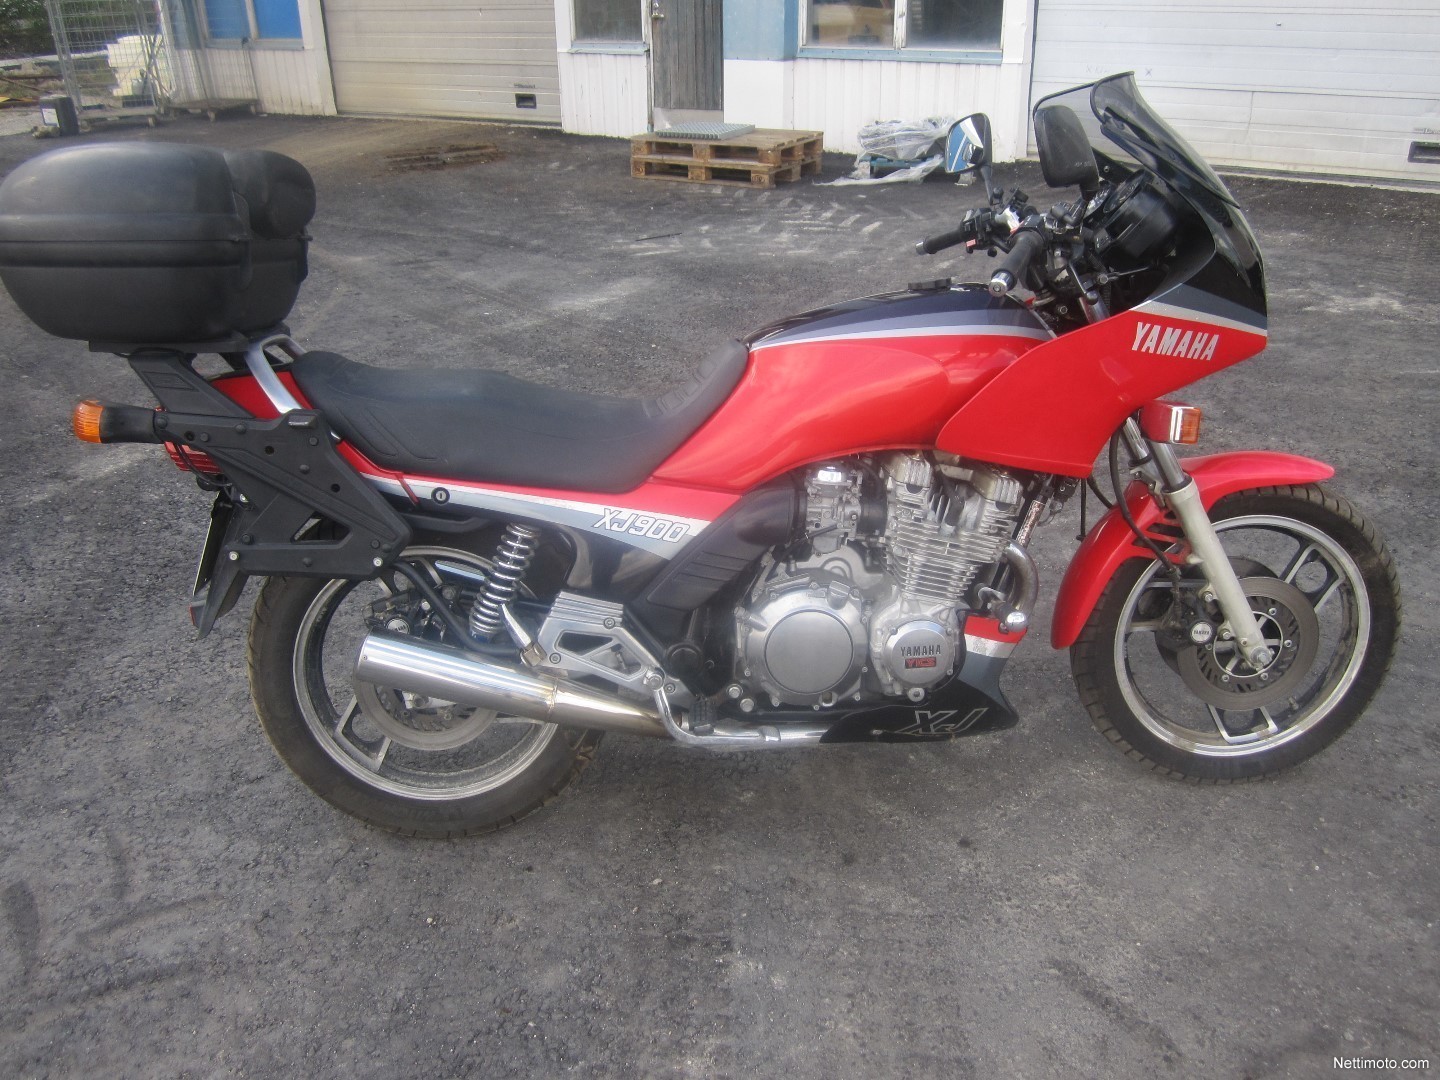 Yamaha - XJ 750 - 750 cc - 1986 - Catawiki